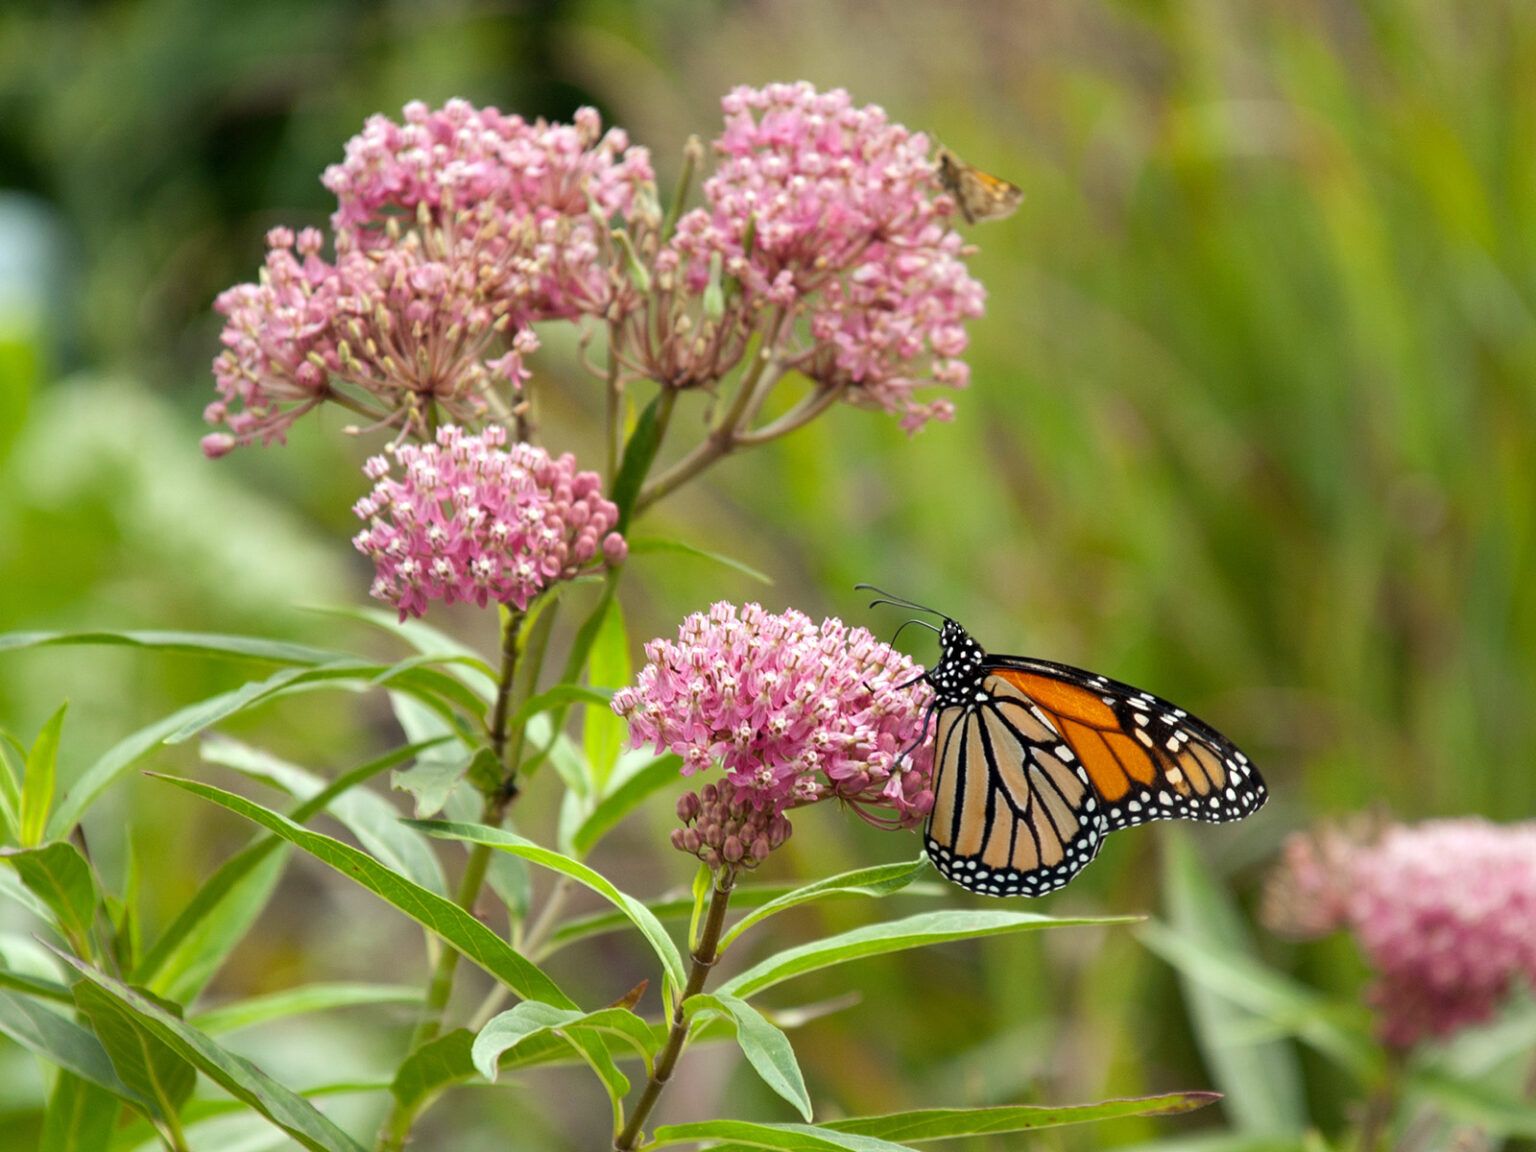 Growing milkweeds – Our Habitat Garden